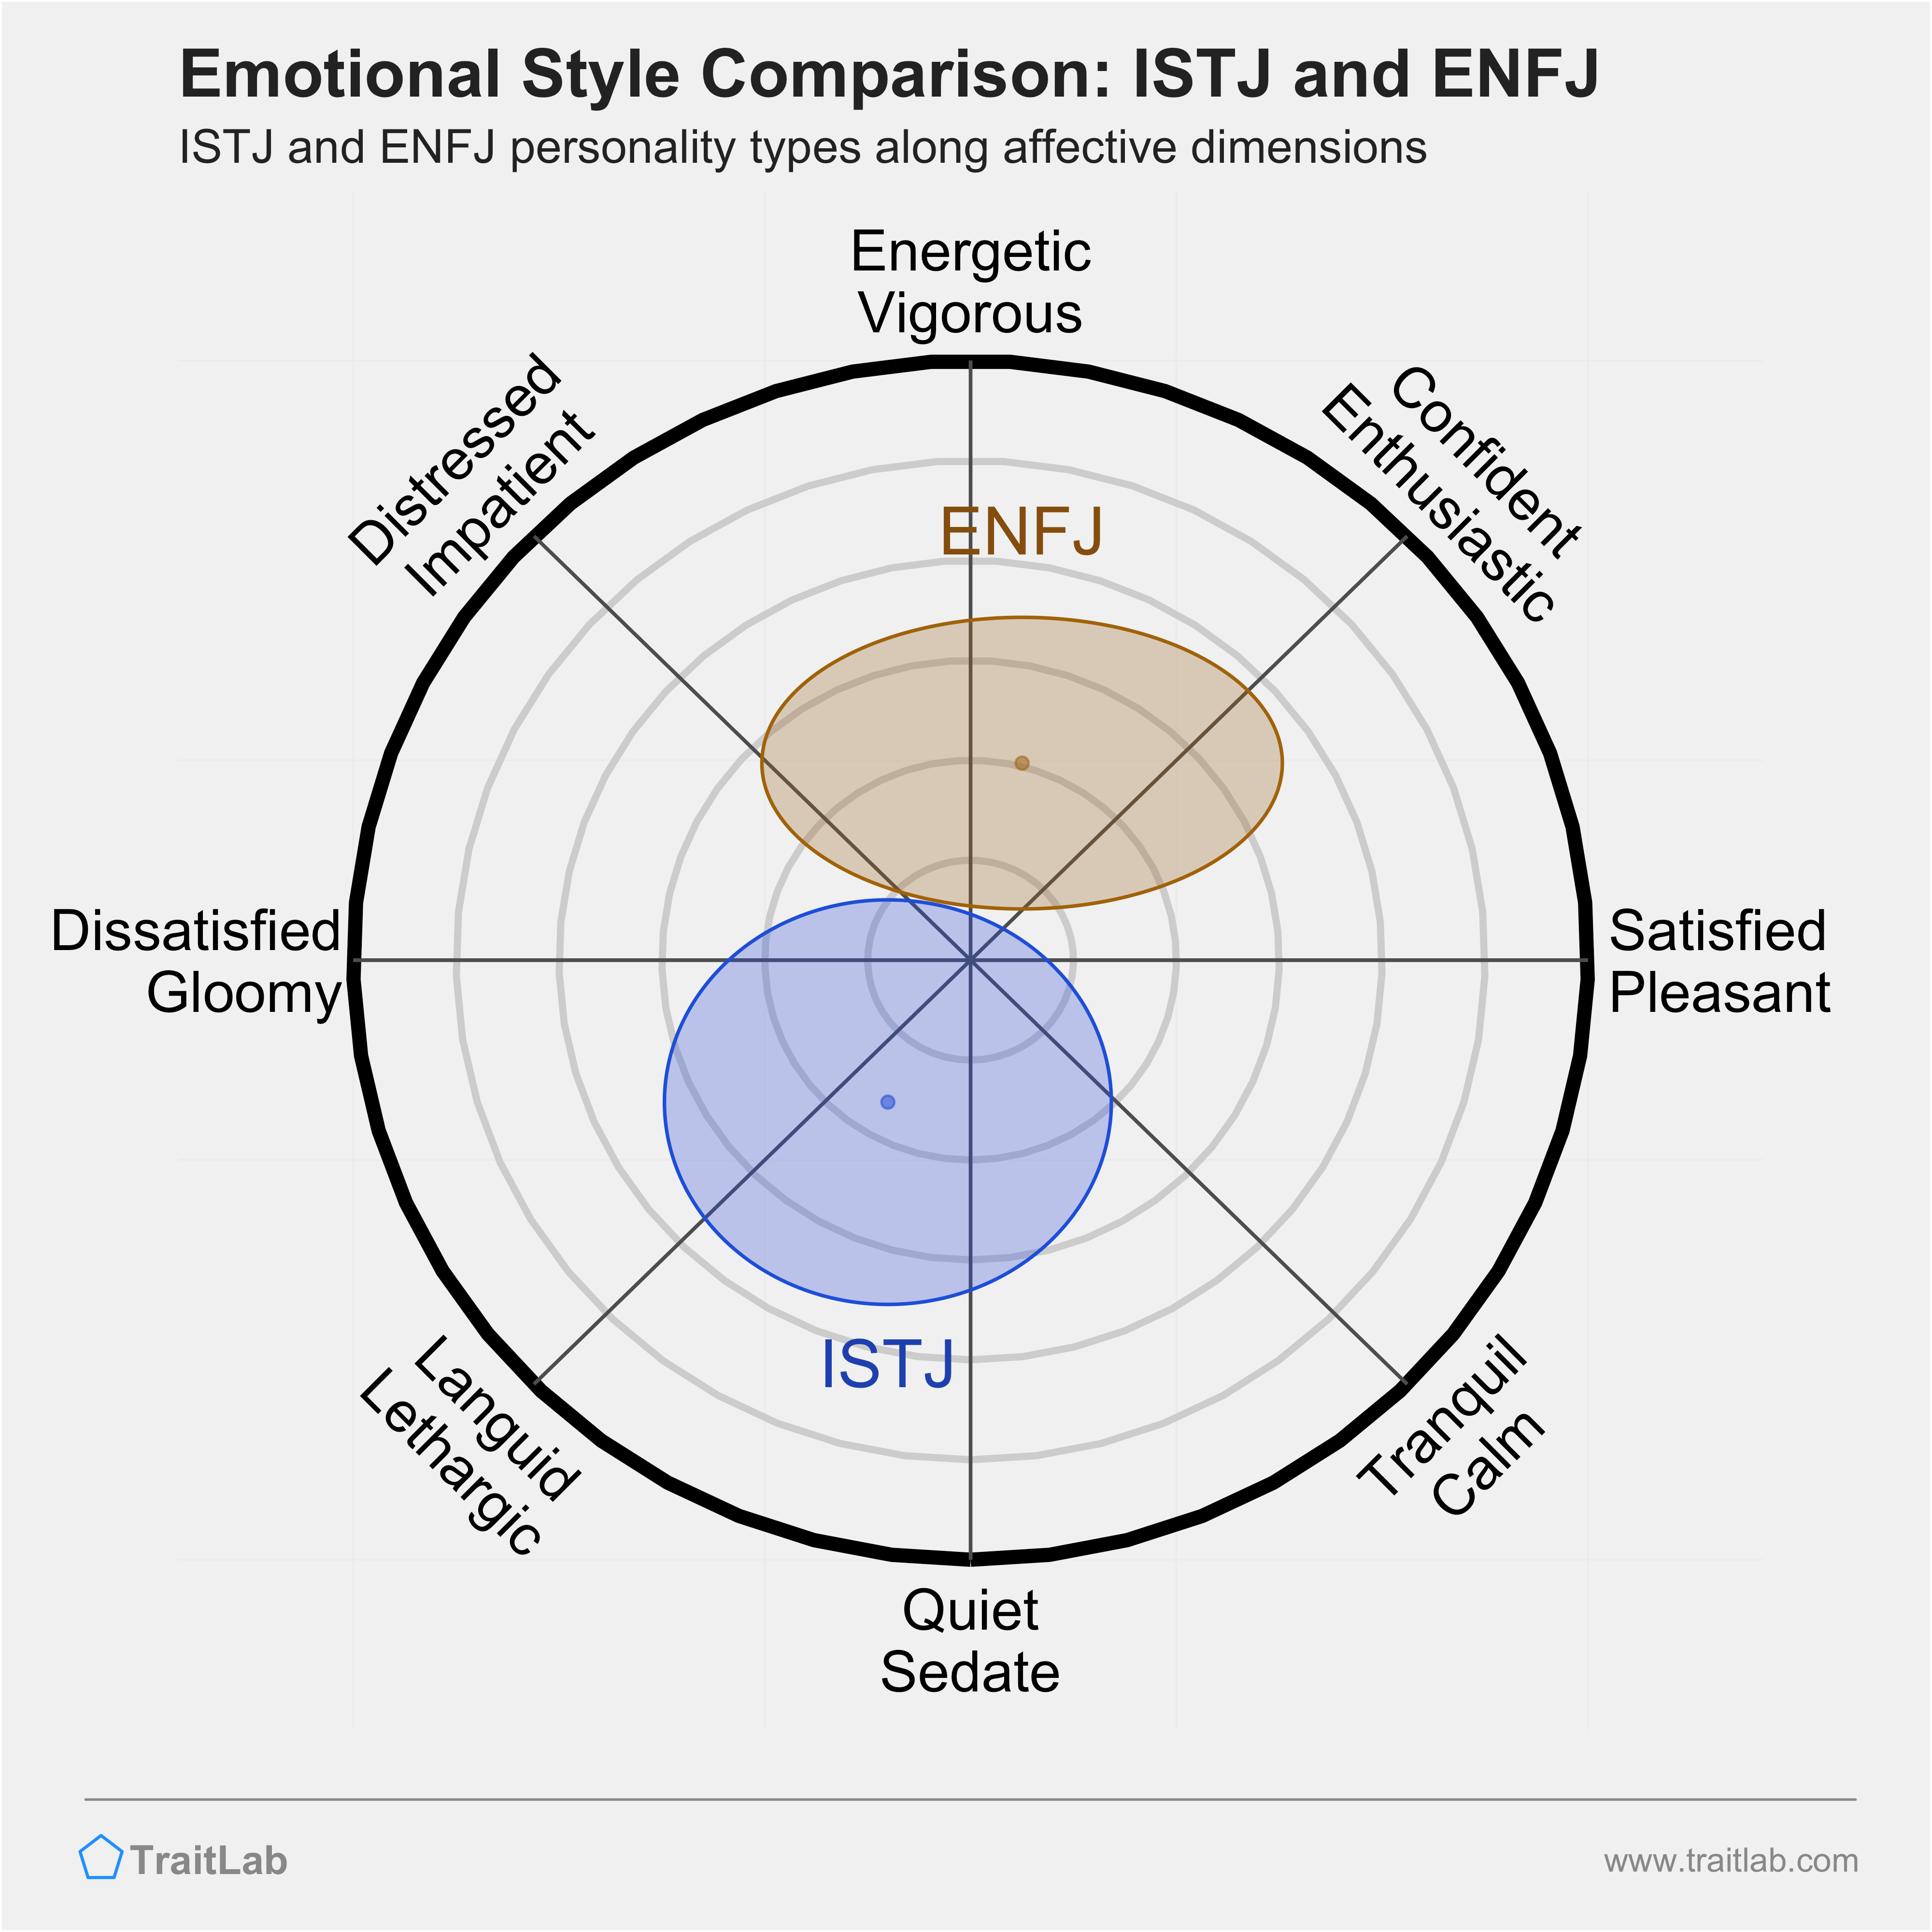 ISTJ and ENFJ comparison across emotional (affective) dimensions